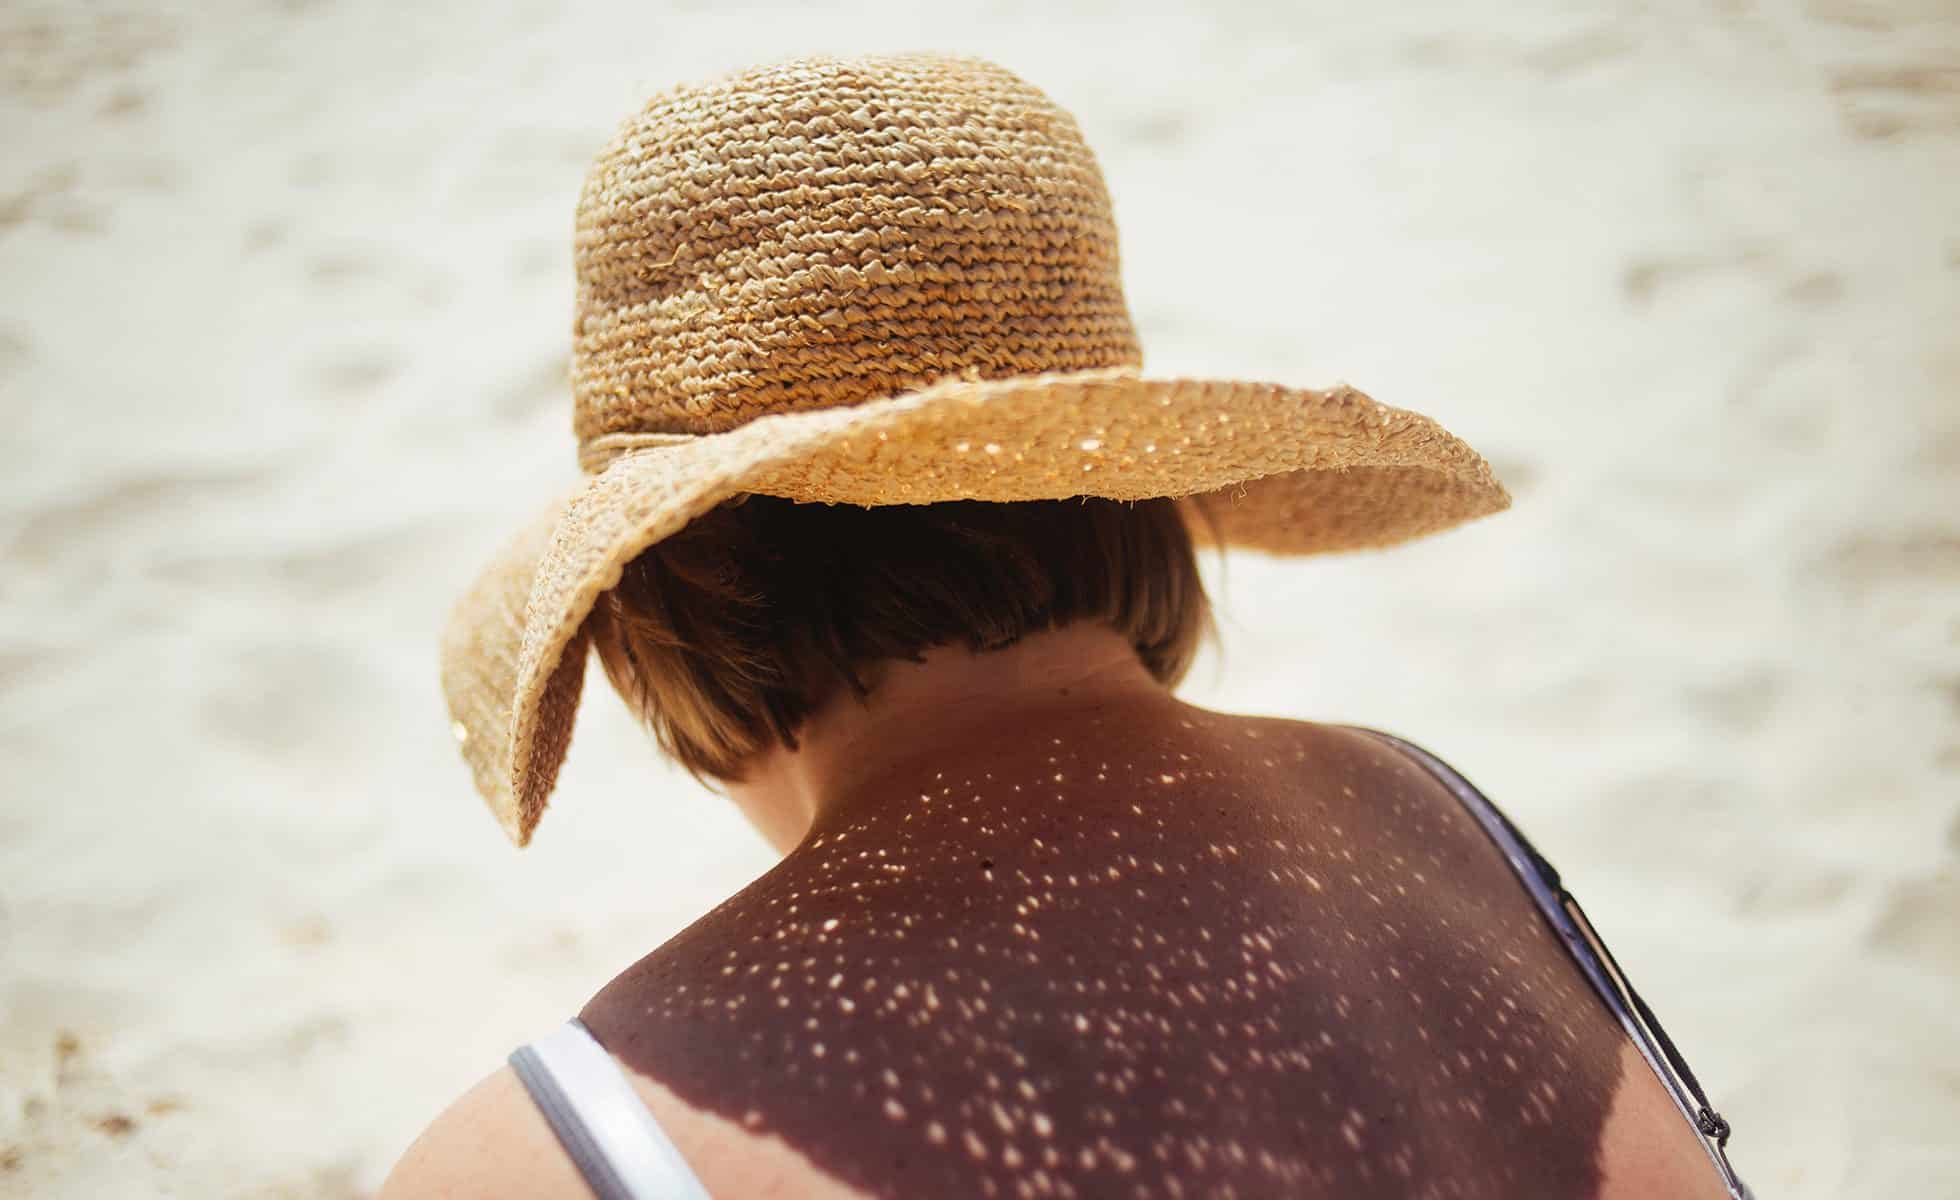 Protégez-vous des bains de soleil en vous ombrageant avec de la crème solaire et un chapeau de soleil